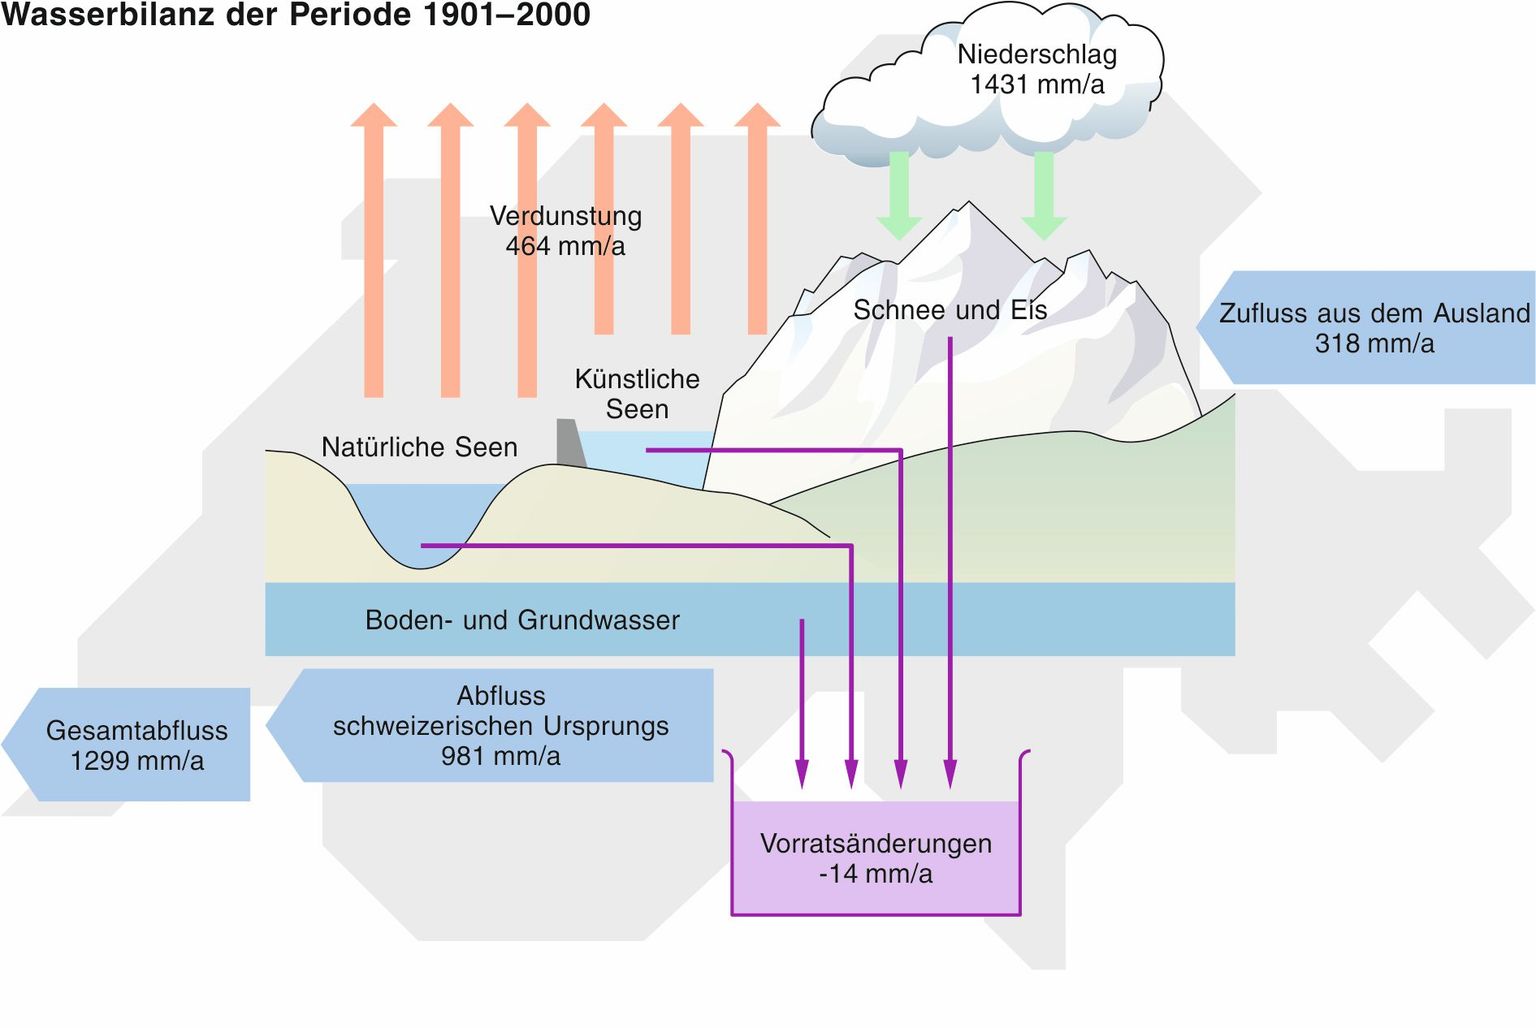 Wasserhaushalt der Schweiz zwischen 1901 und 2000 (Hubacher & Schädler 2010). 1 mm Wasser auf der Fläche der Schweiz entspricht 41.3 Millionen Kubikmeter Wasser. 60 Milliarden Kubikmeter Wasser fallen also pro Jahr auf die Fläche der Schweiz! Die Vorratsänderung von – 14 mm/a bedeutet, dass jährlich 600 Milliarden Liter Wasser als Folge des Gletscherschwundes aus dem Wasserhaushalt der Schweiz „verschwunden“ sind.  Der Verlauf der Komponenten des Wasserhaushalts seit 1901 ist im Anhang 2 (Abb. 12) abgebildet, eine erweiterte Bilanz befindet sich im Anhang 4 (Abb. 14).